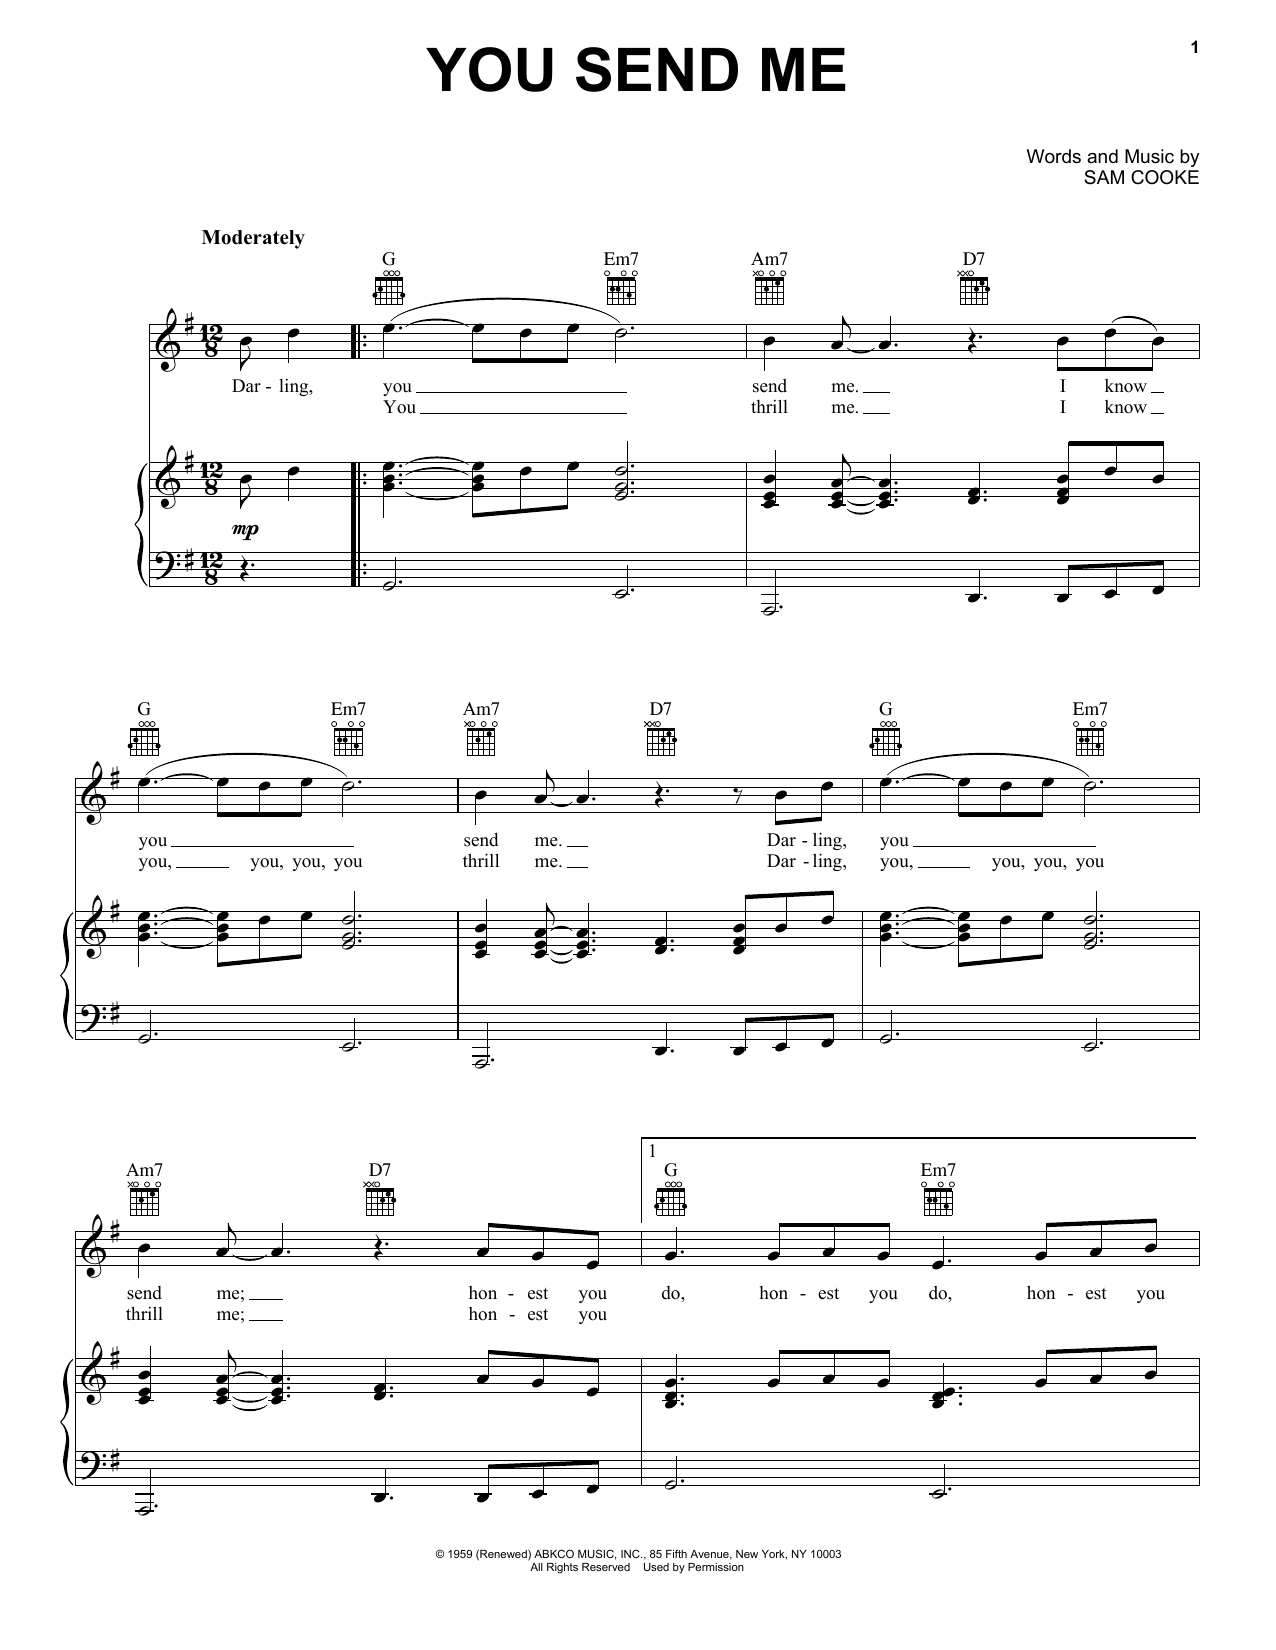 Sam Cooke You Send Me Sheet Music Notes & Chords for Ukulele - Download or Print PDF